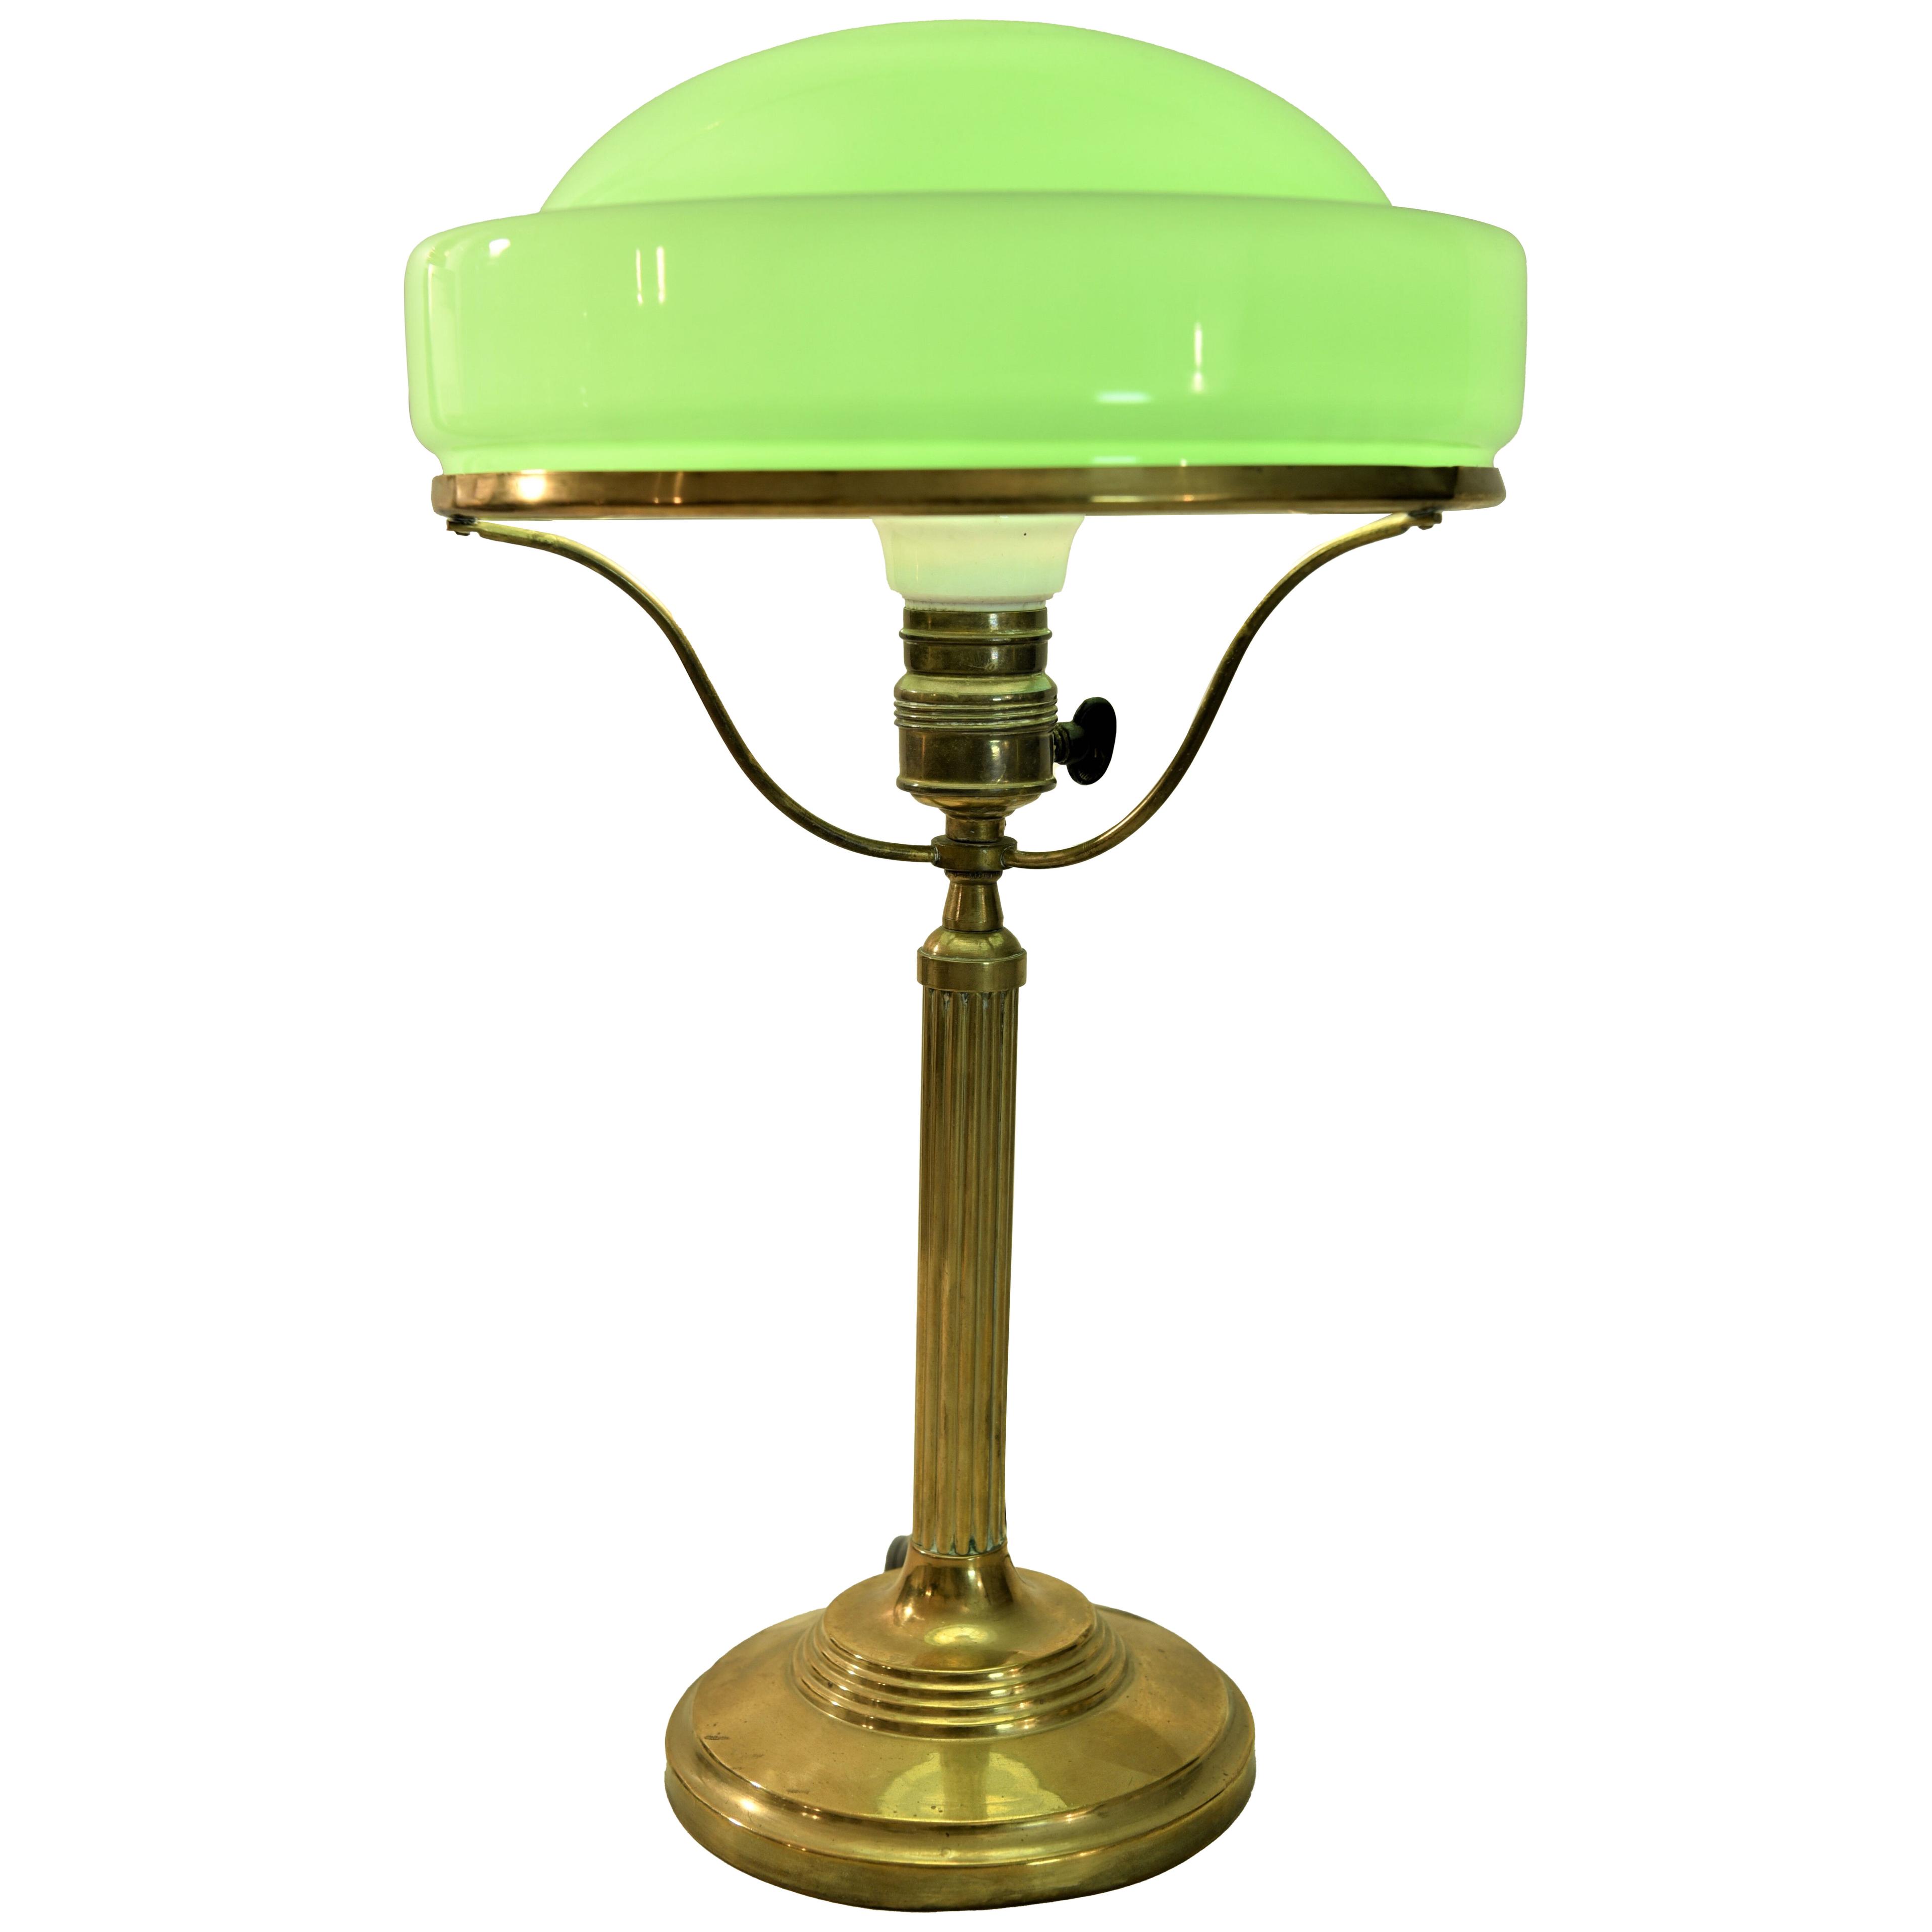 Jugendstil / Art Nouveau Brass and Glass Table Lamp Made in Sweden, 1920´s